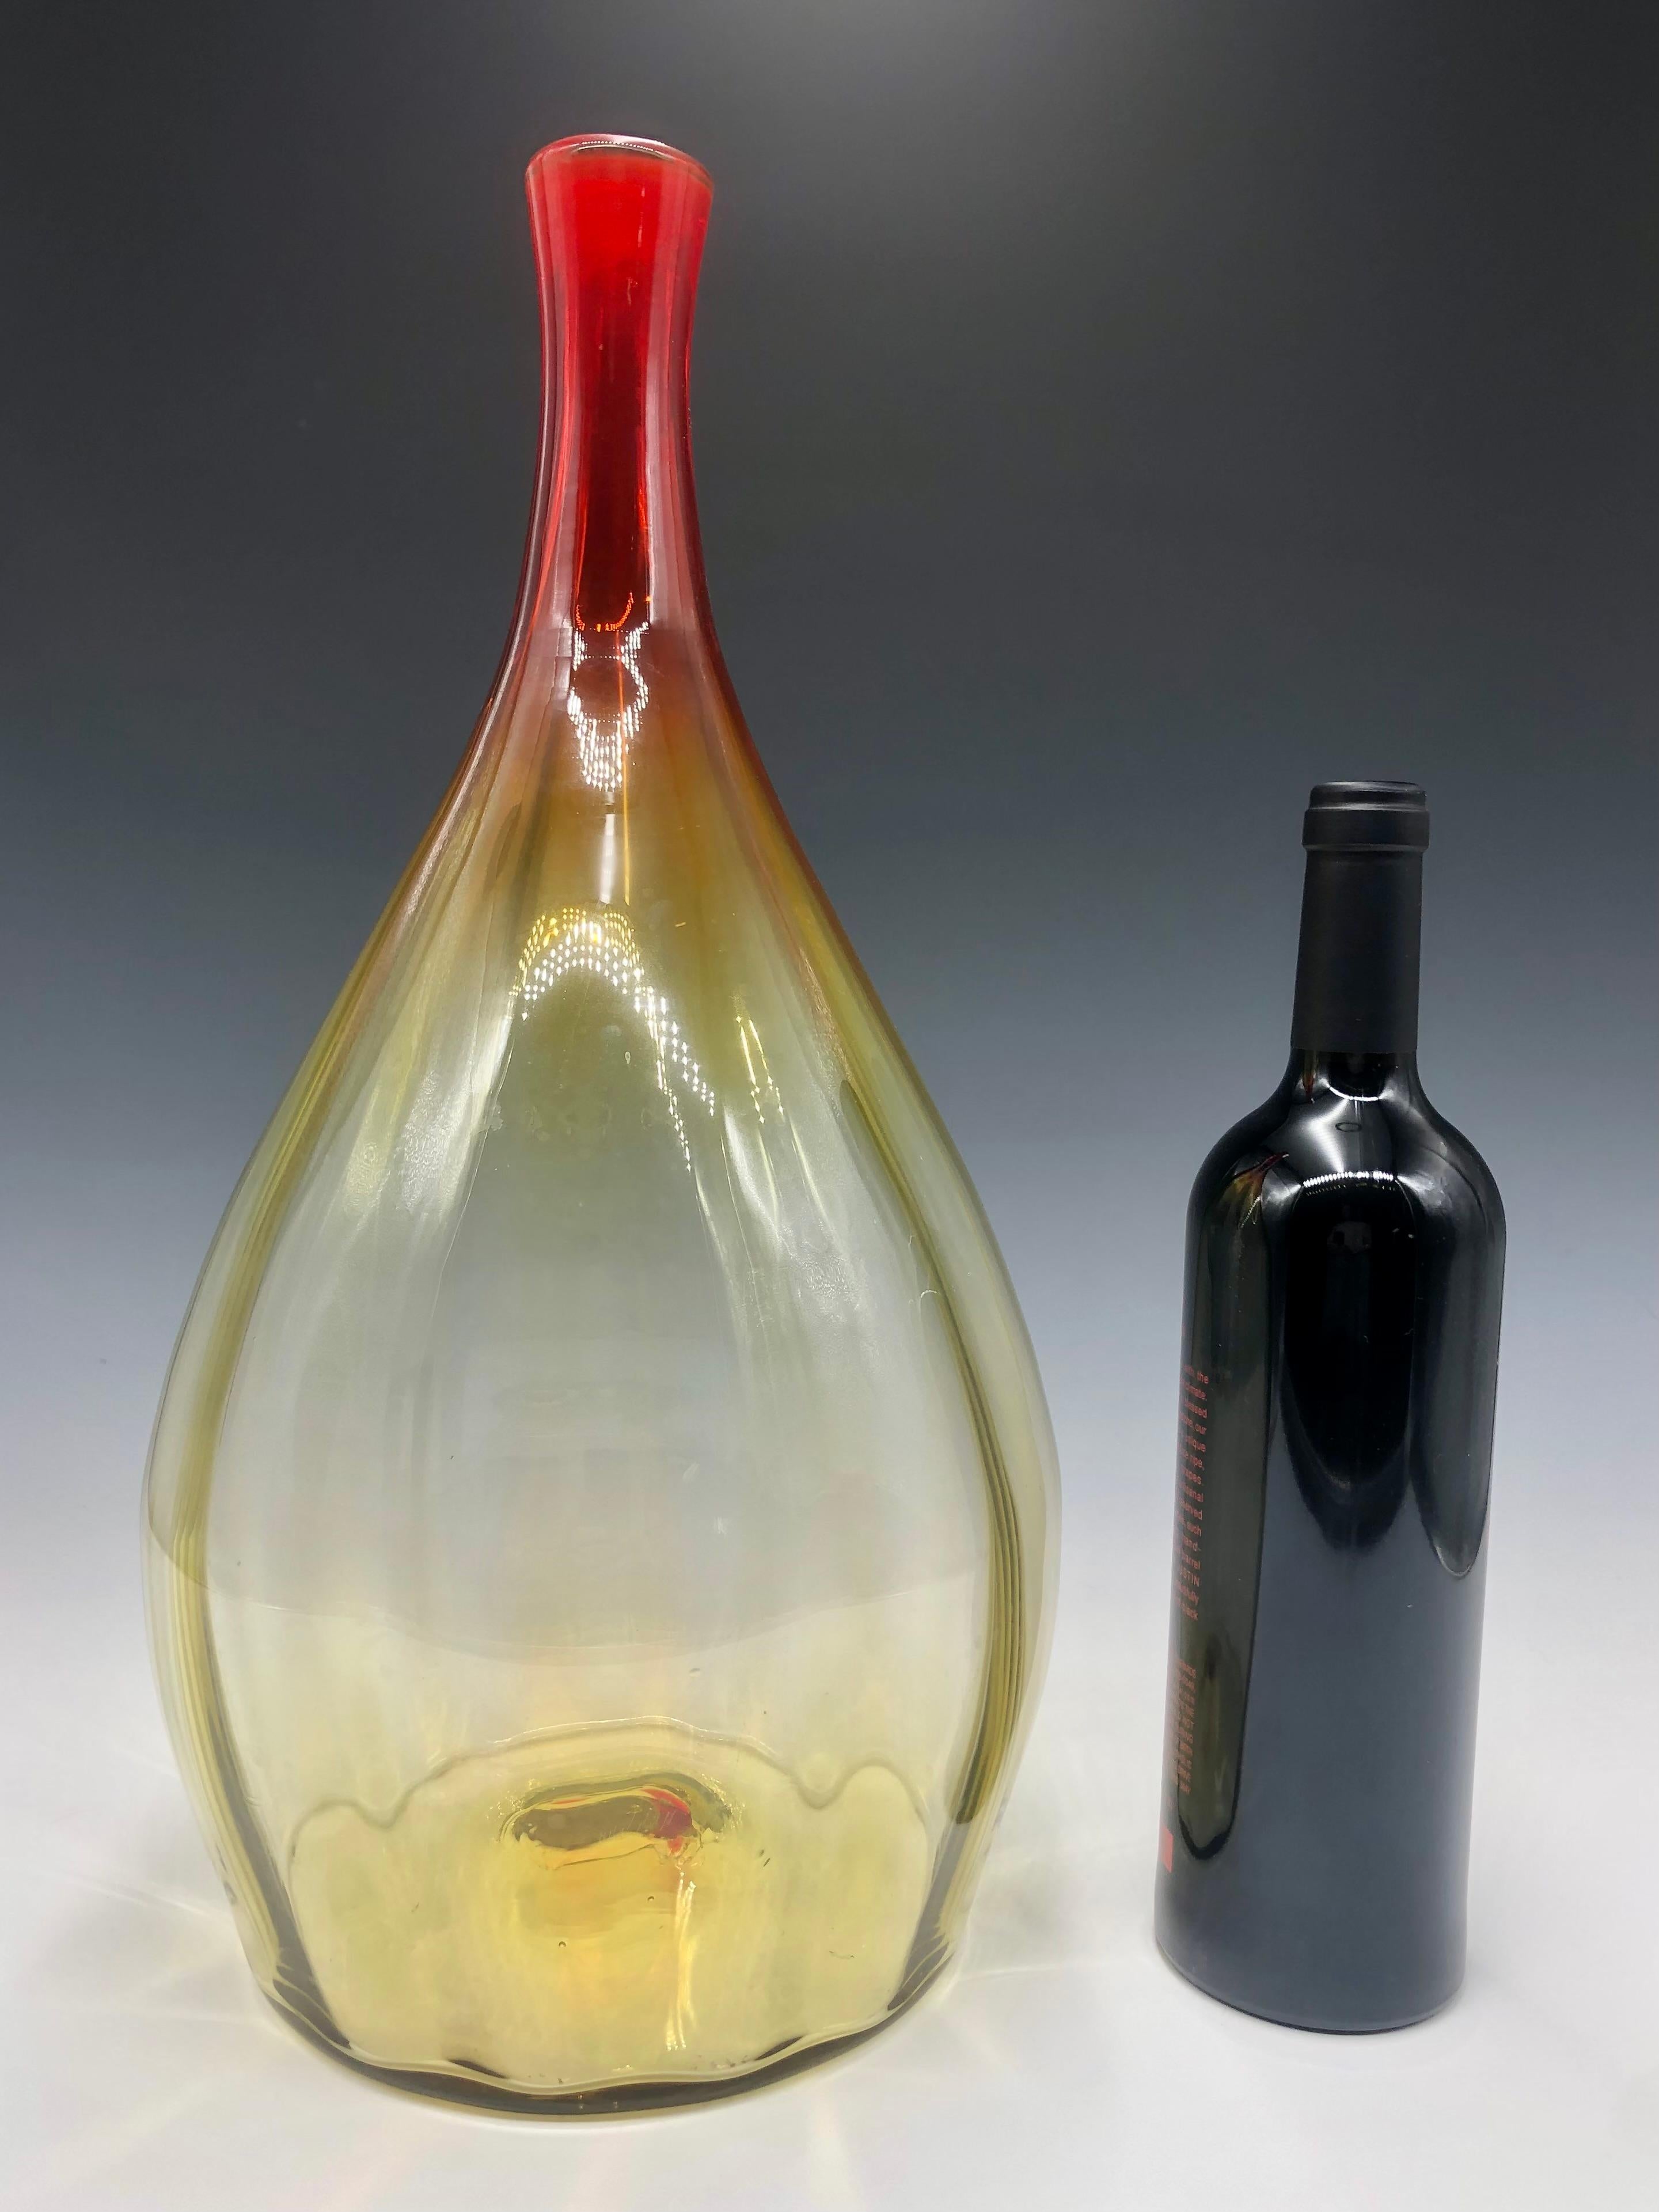 Magnifique vase/vase surdimensionné soufflé à la main par Blenko Yellow Red Amberina. Un cou rouge profond qui passe subtilement à un corps jaune pâle.

Taille : 17,5